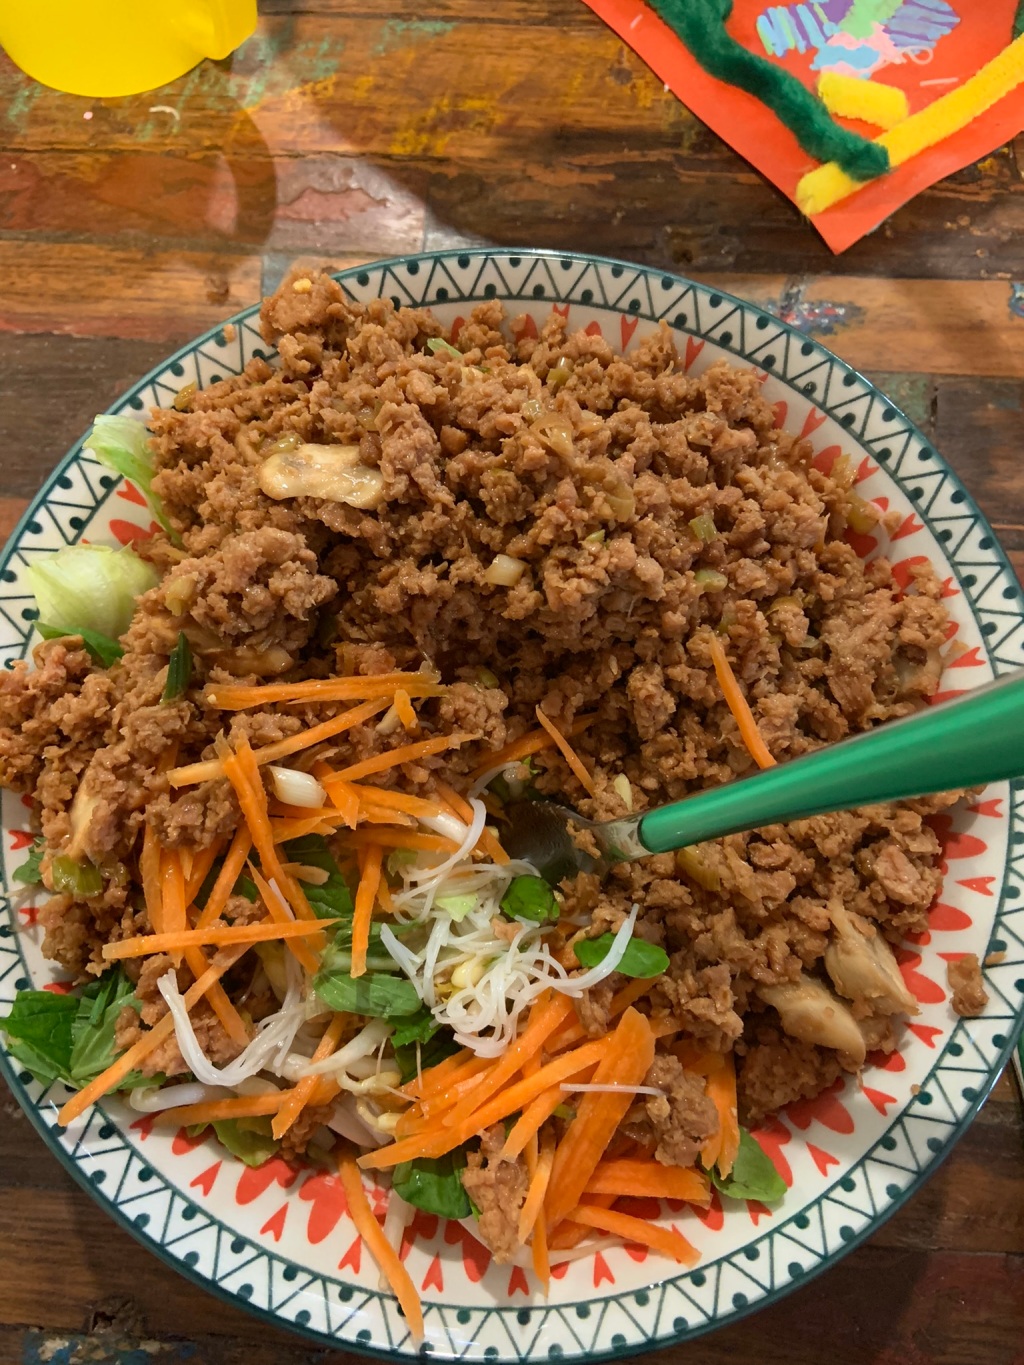 Vietnamese noodle salad